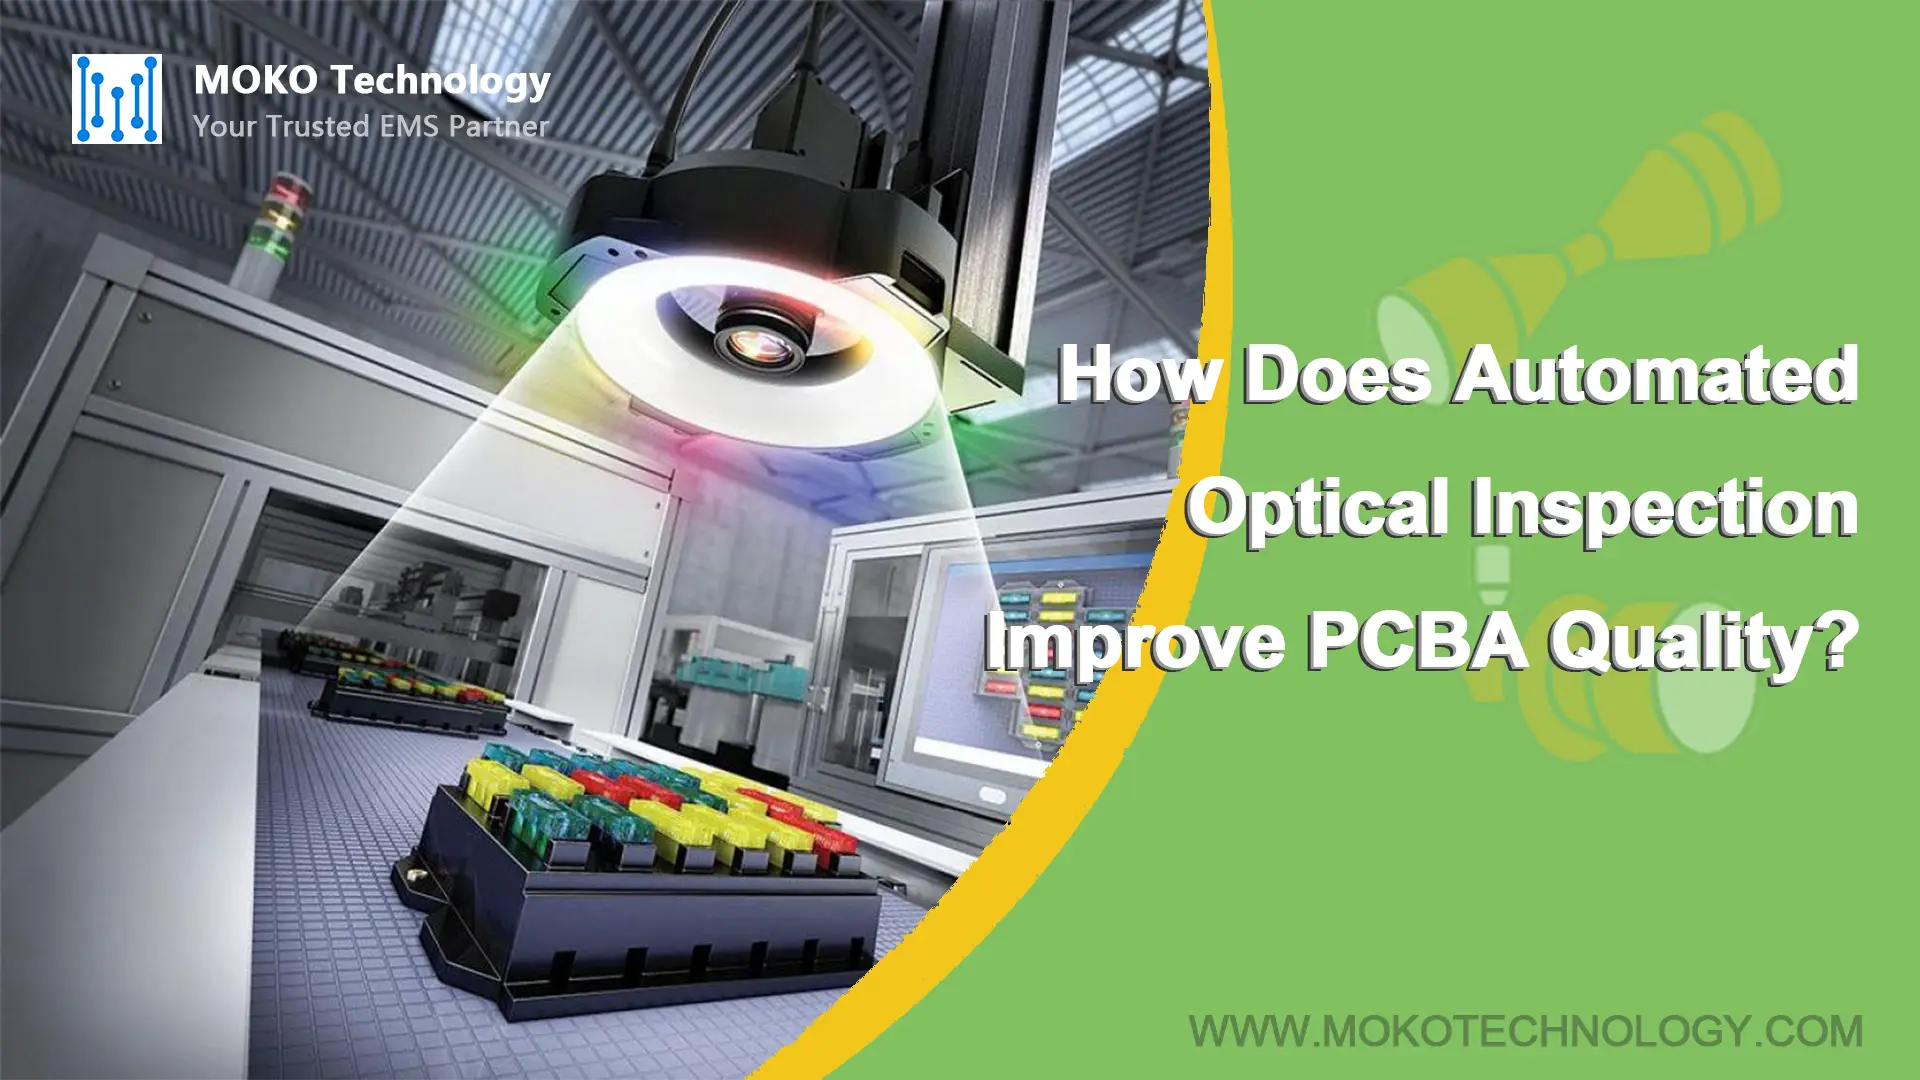 In che modo l'ispezione ottica automatizzata migliora la qualità PCBA